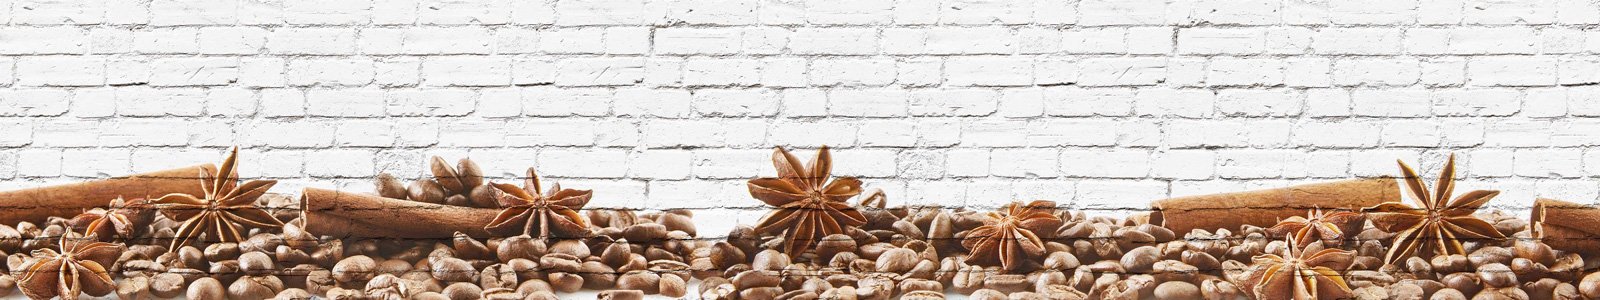 №7060 - Кофе зерна на фоне кирпичной стены